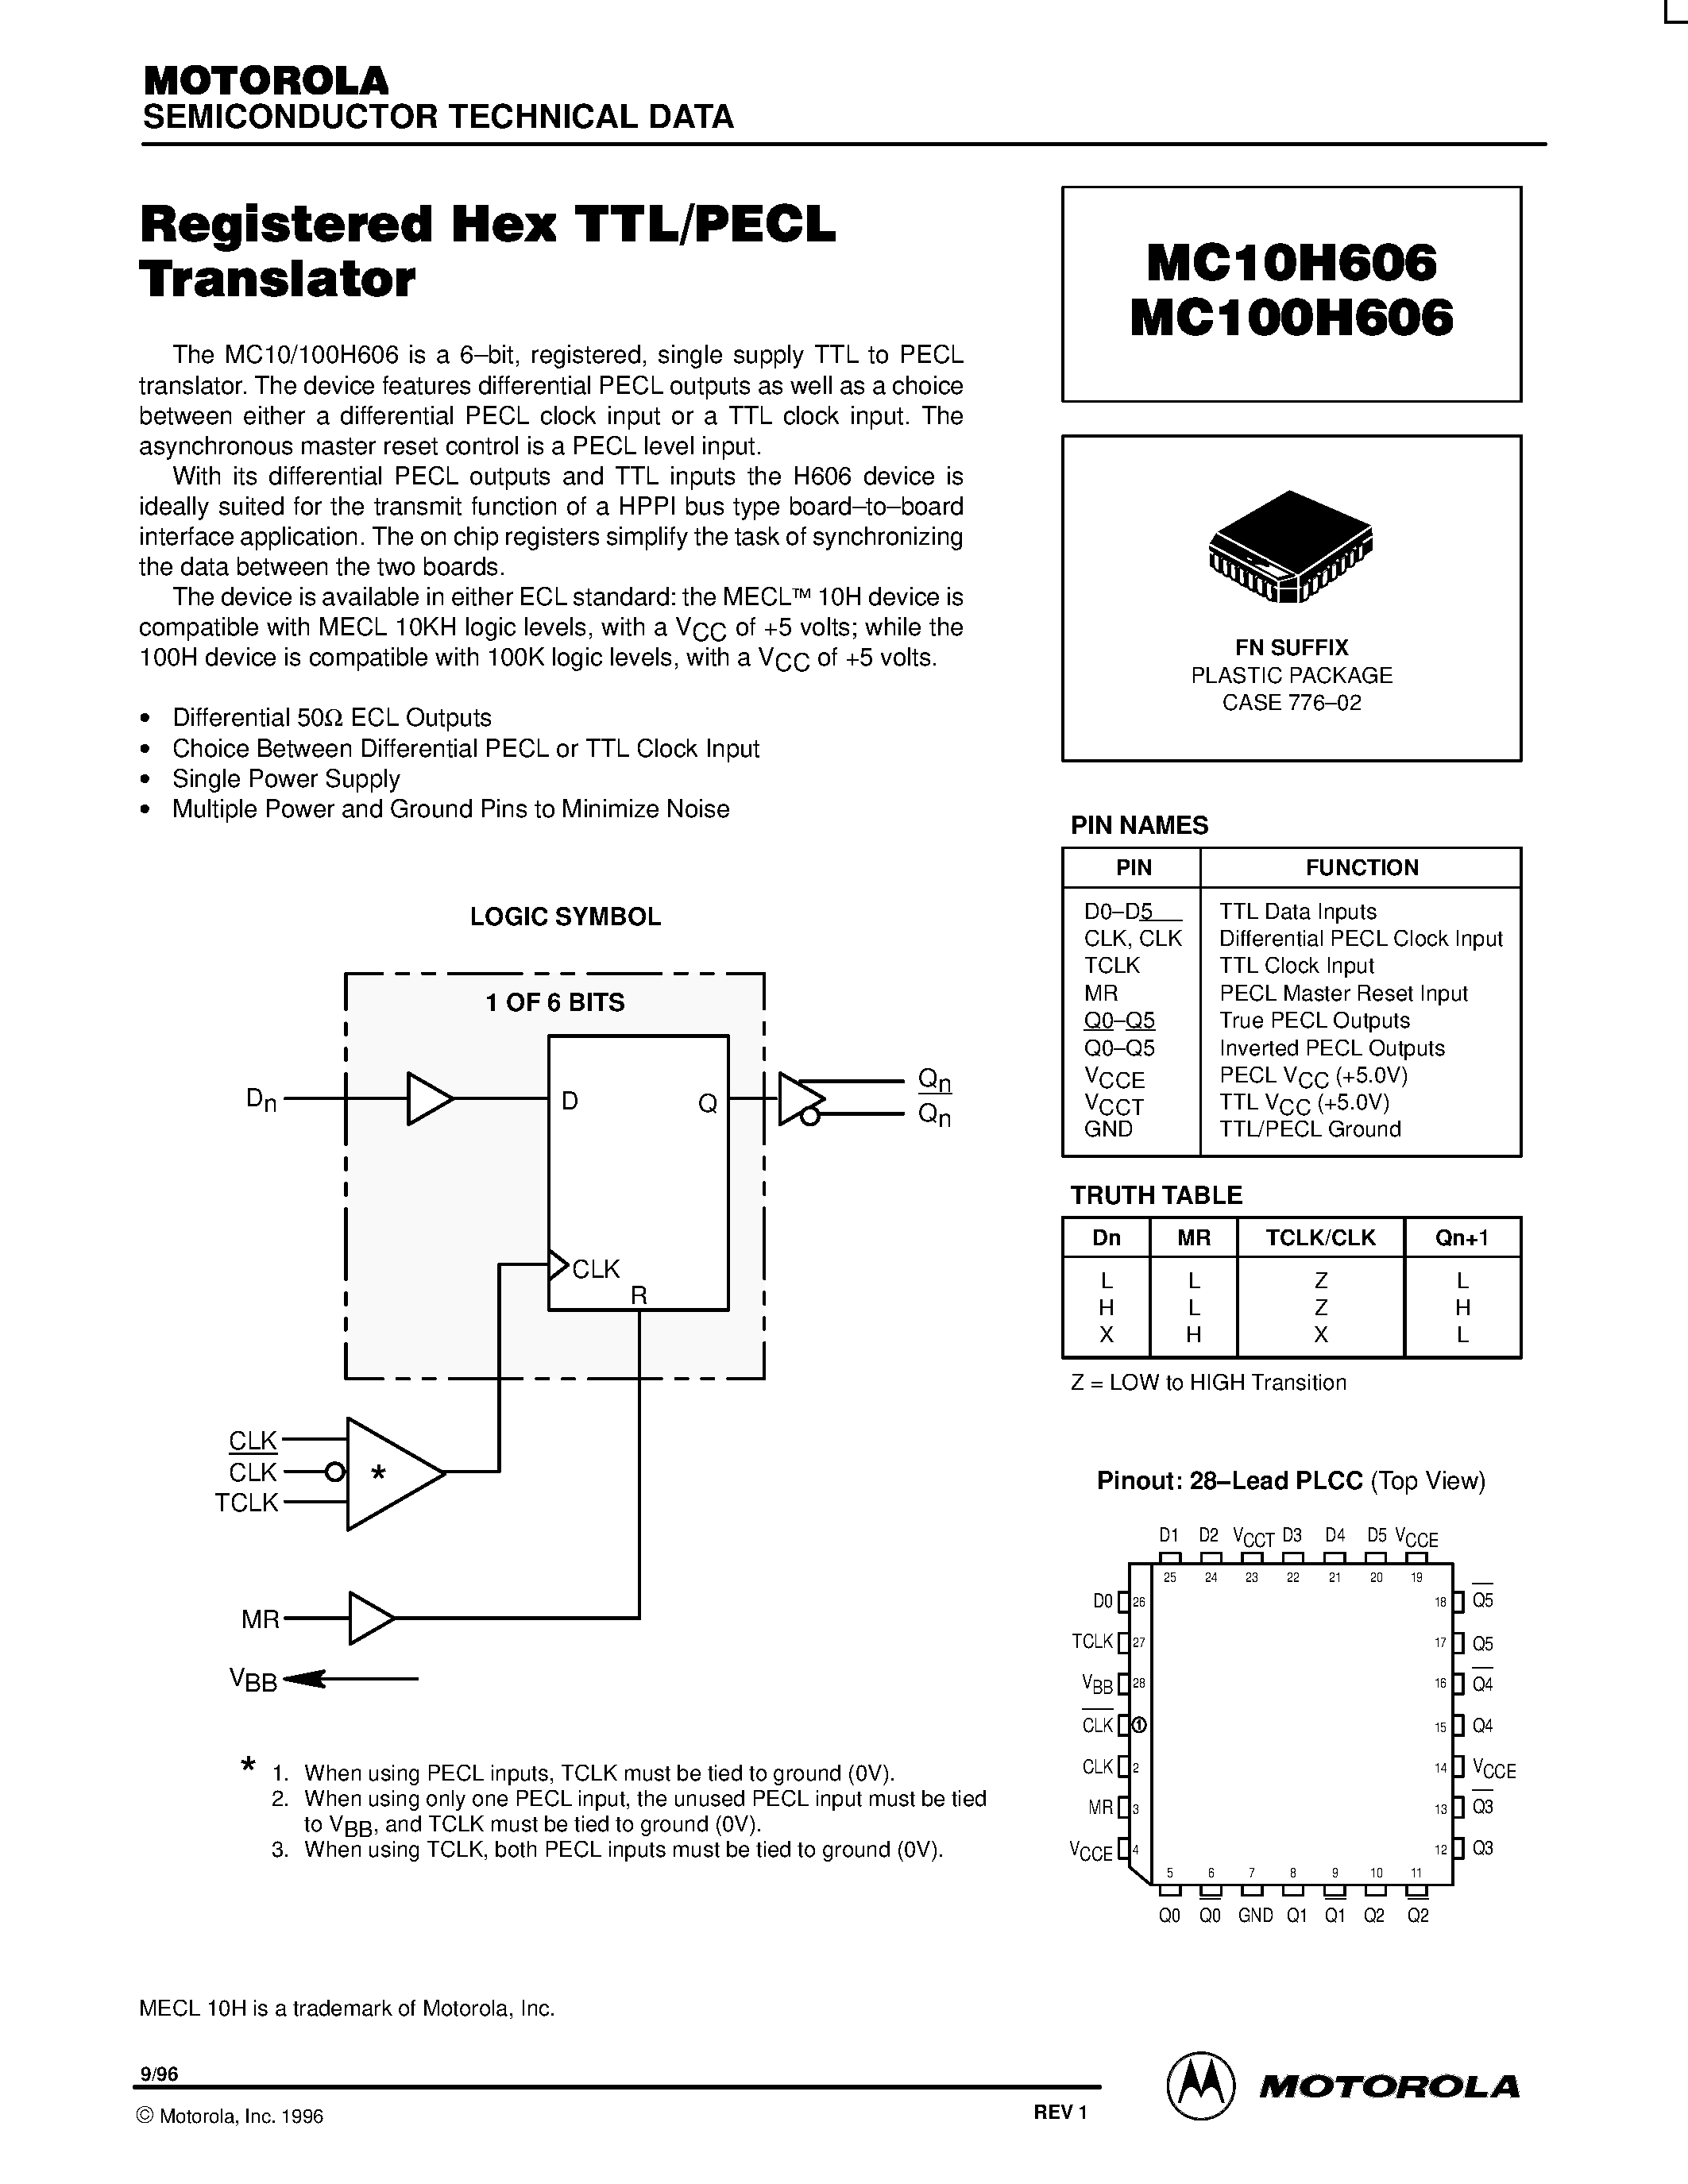 Даташит MC10H606FN - Registered Hex TTL/PECL Translator страница 1